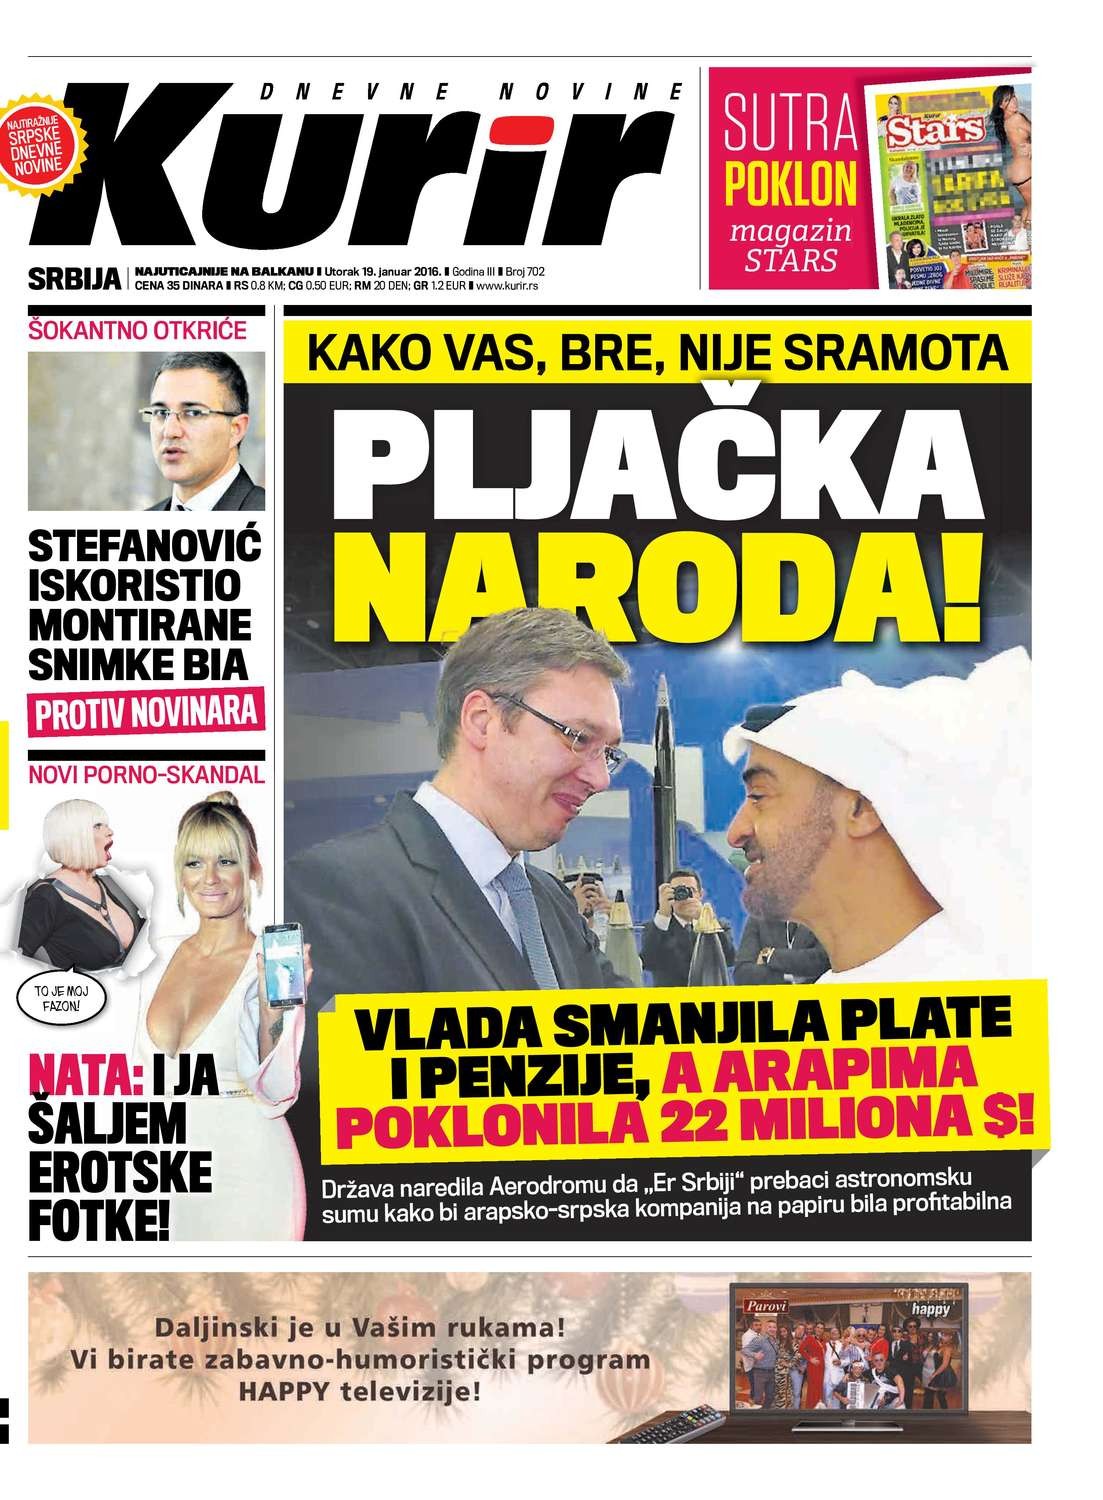 Naslovnica Kurira od 19. januara 2016: Primer kriminalizacije tadašnjeg predsednika Vlade Srbije Aleksandra Vučića